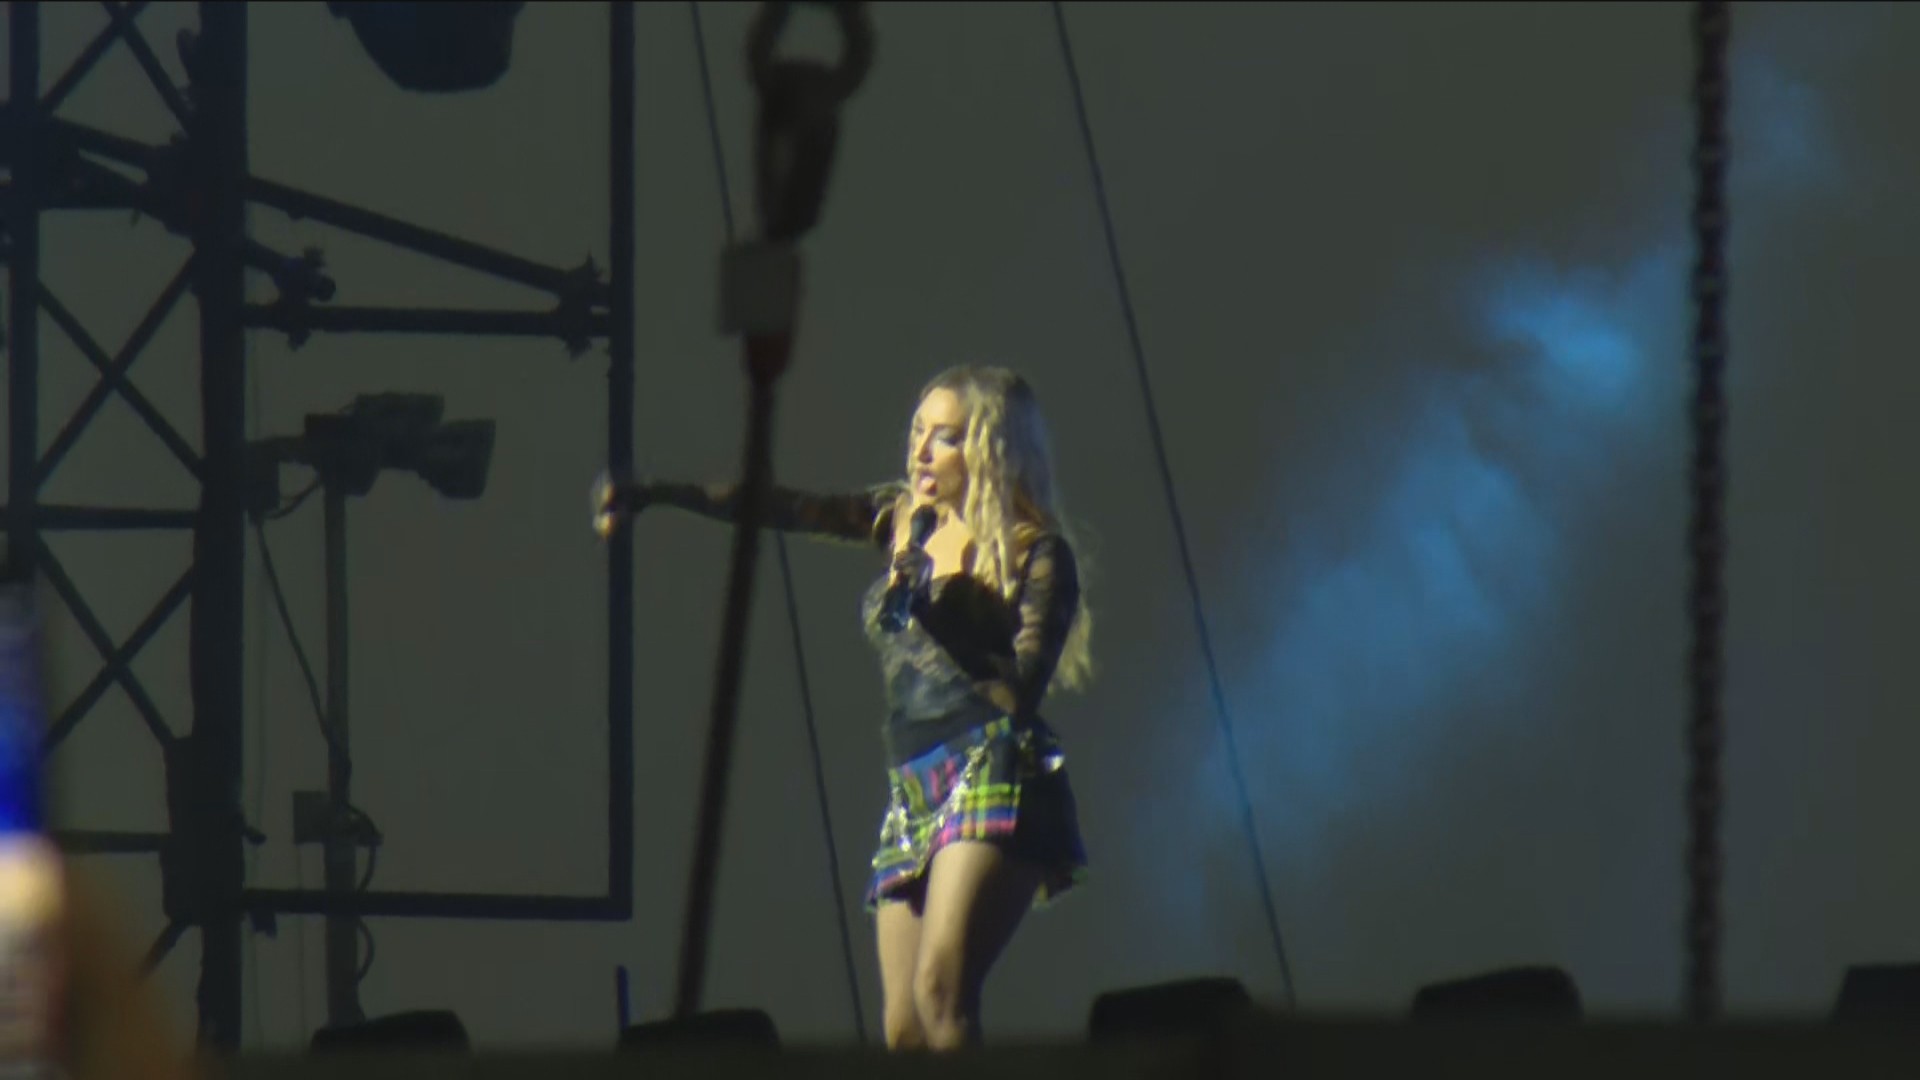 Dublê de Madonna sobe ao palco e confunde público, mas depois anima Copacabana em ensaio com presença de Pabllo Vittar; VÍDEO